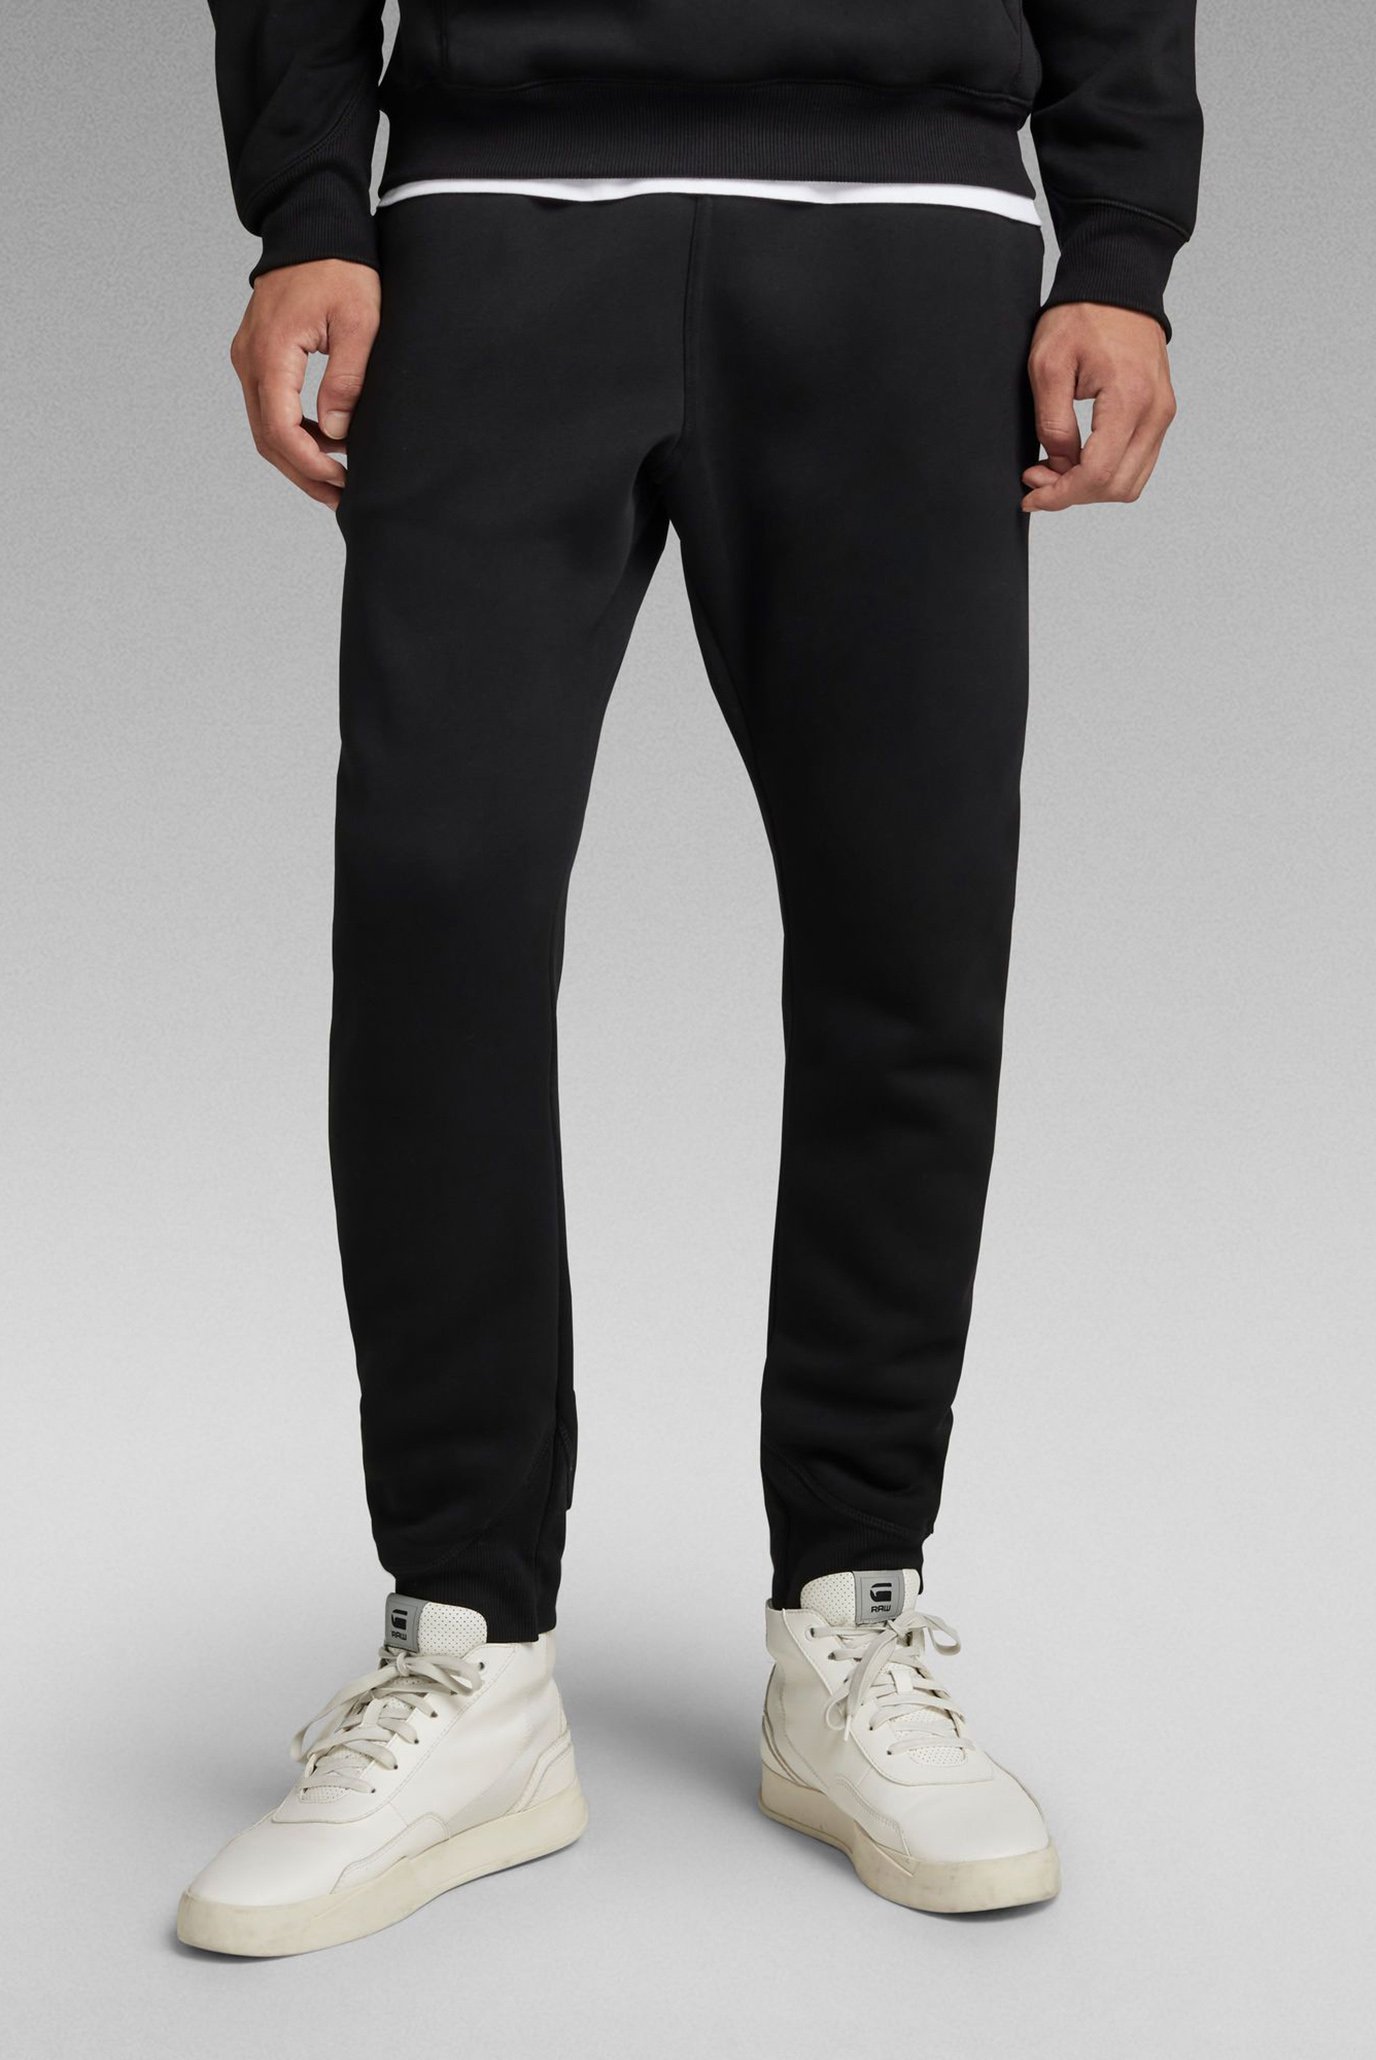 Чоловічі чорні спортивні штани Premium core type 1